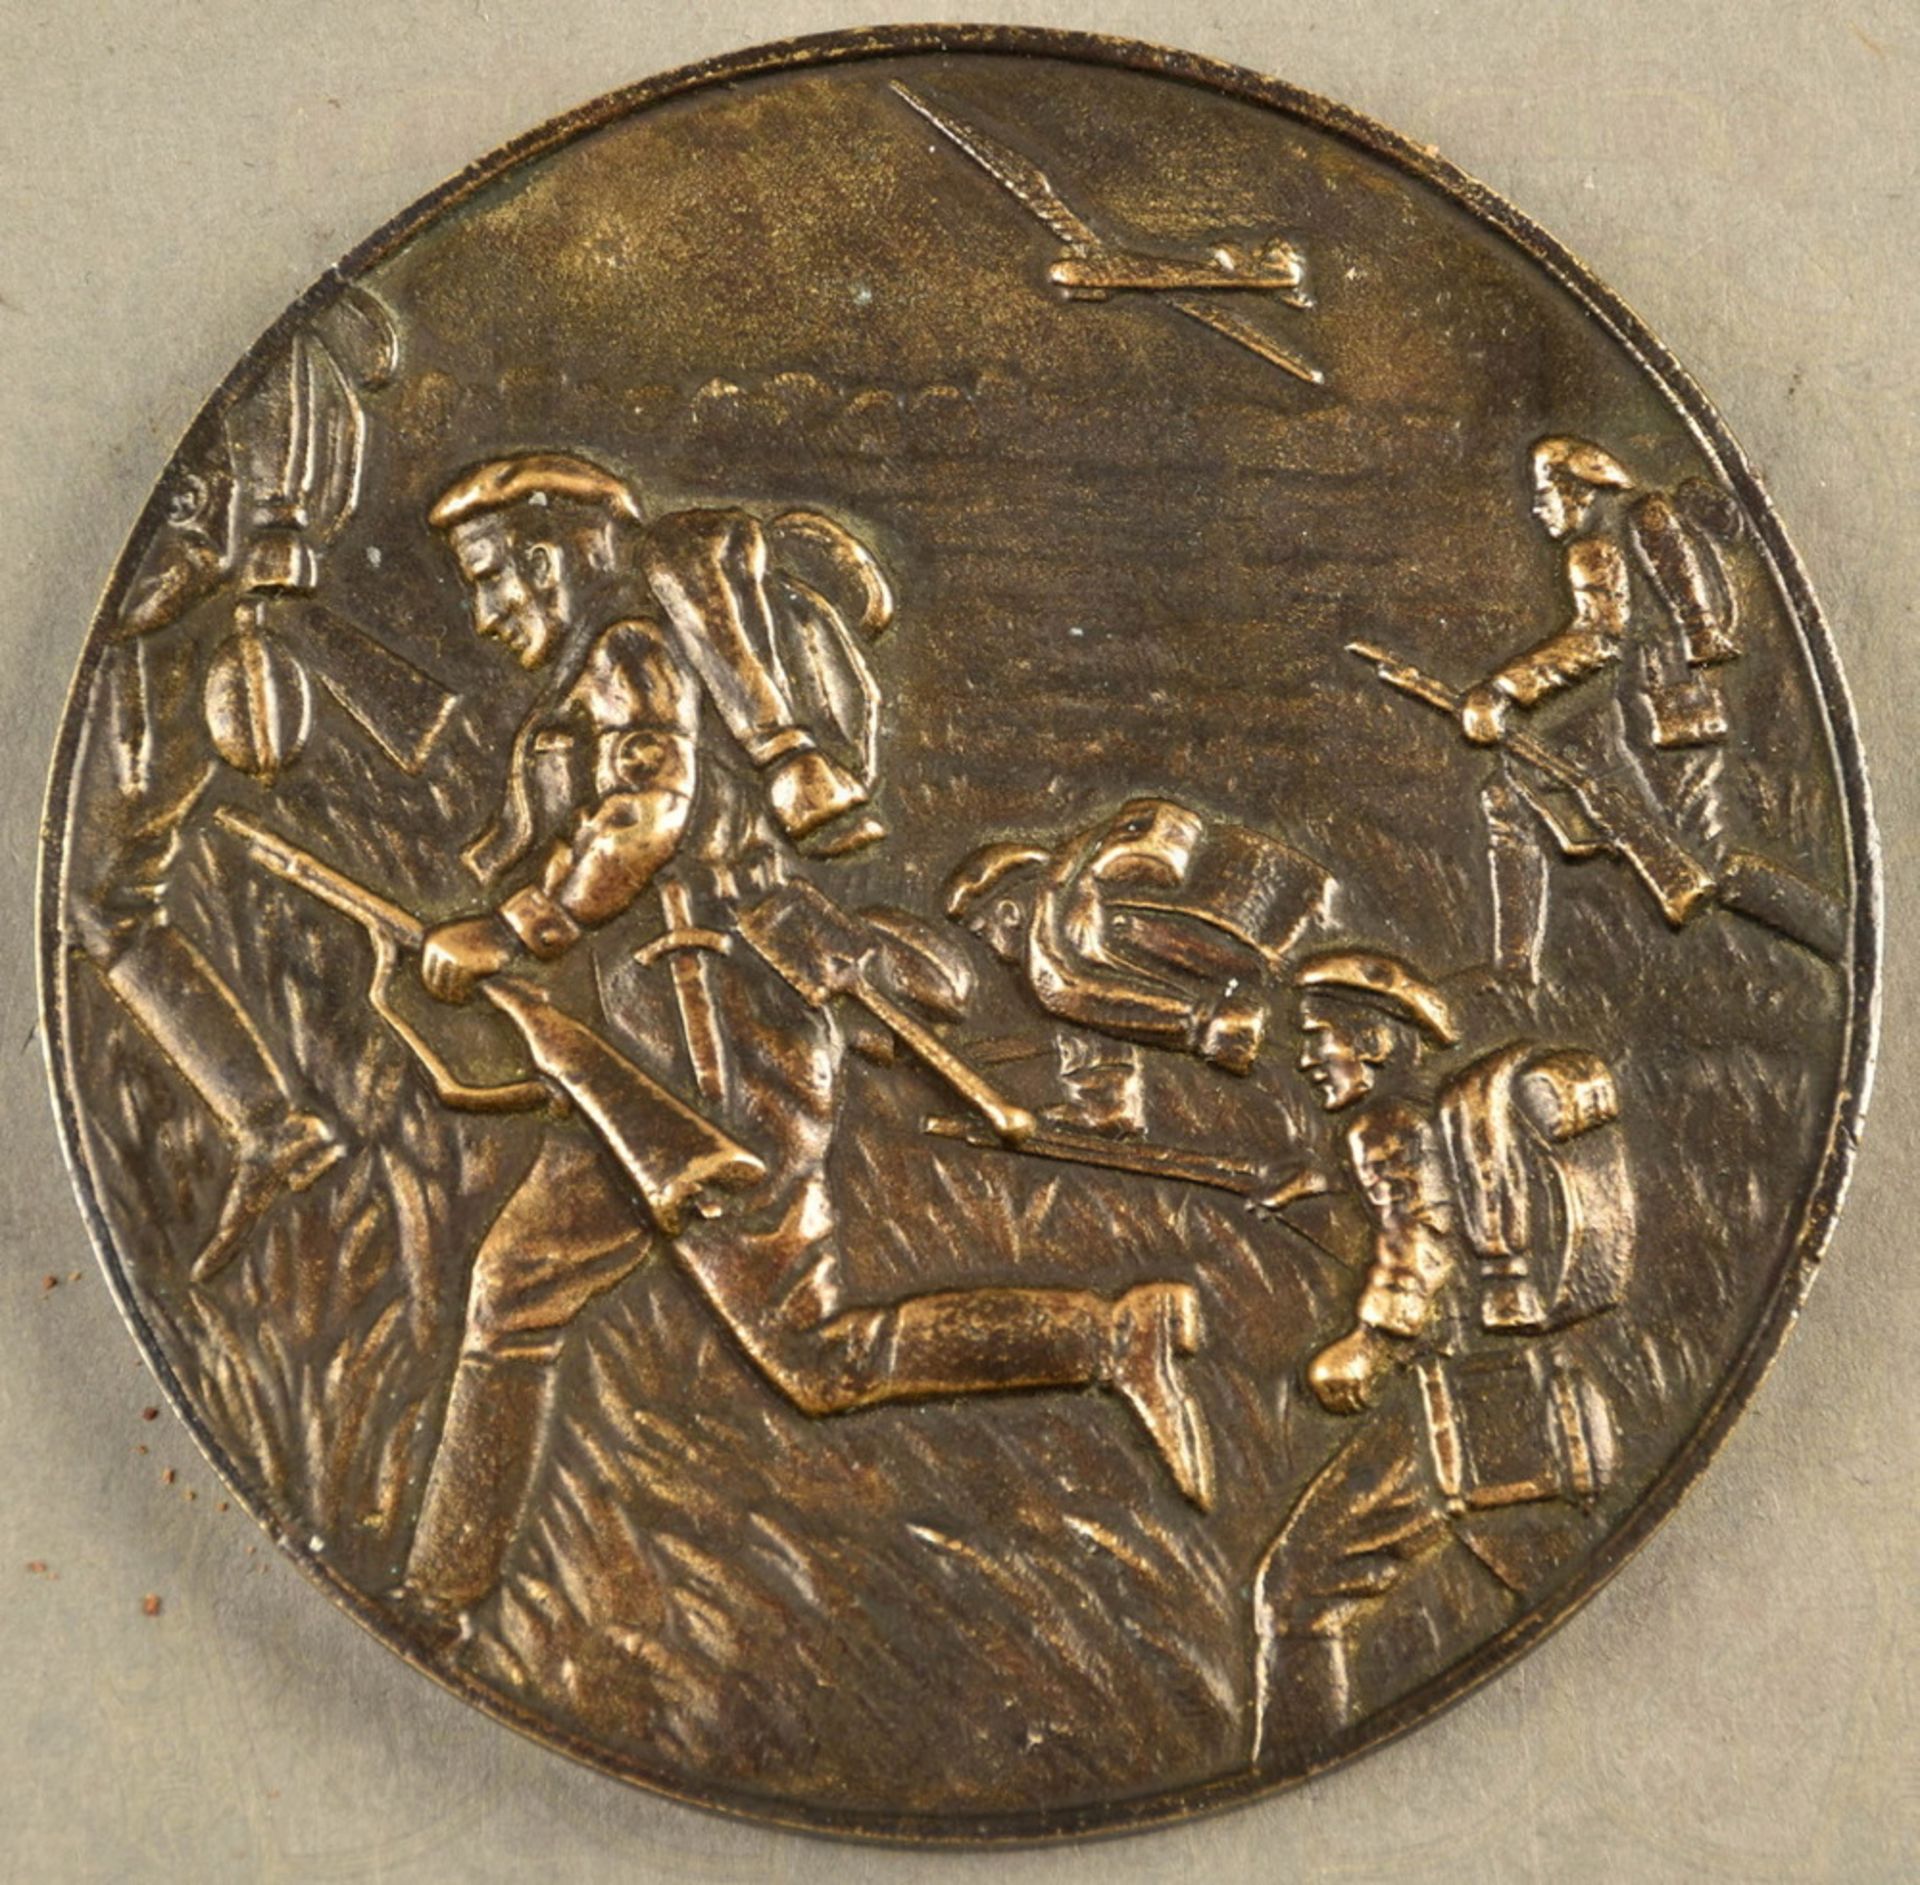 Bronzeplakette NSFK-Reichswettkämpfe Düsseldorf, 30.6-2.7. 1939, Bronzeguß/patiniert/massiv, m. - Image 2 of 2